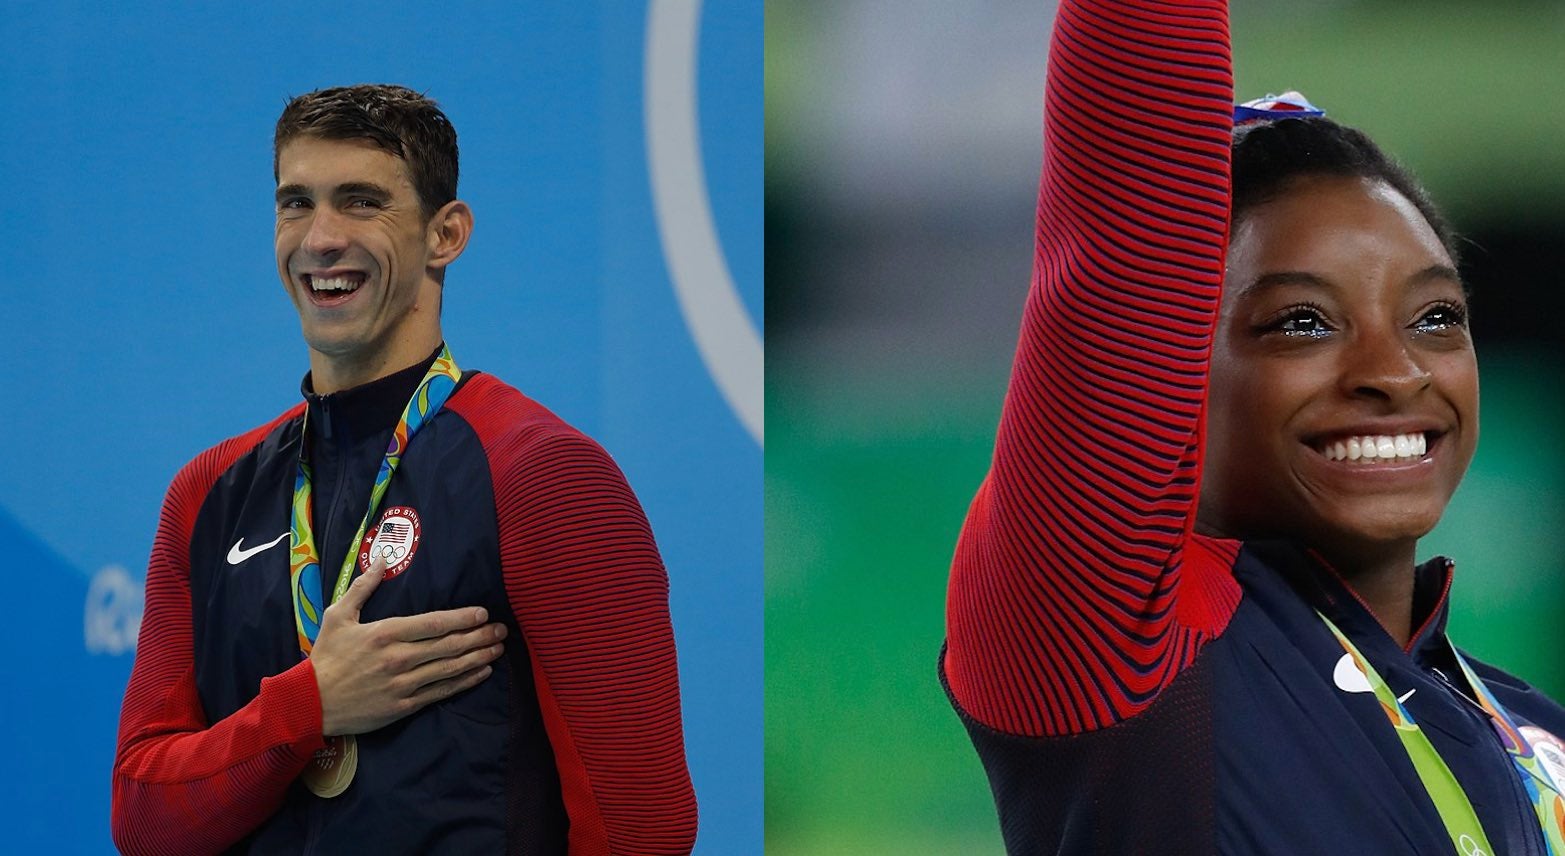 De Michael Phelps à Simone Biles : quand les athlètes brisent le tabou de la santé mentale